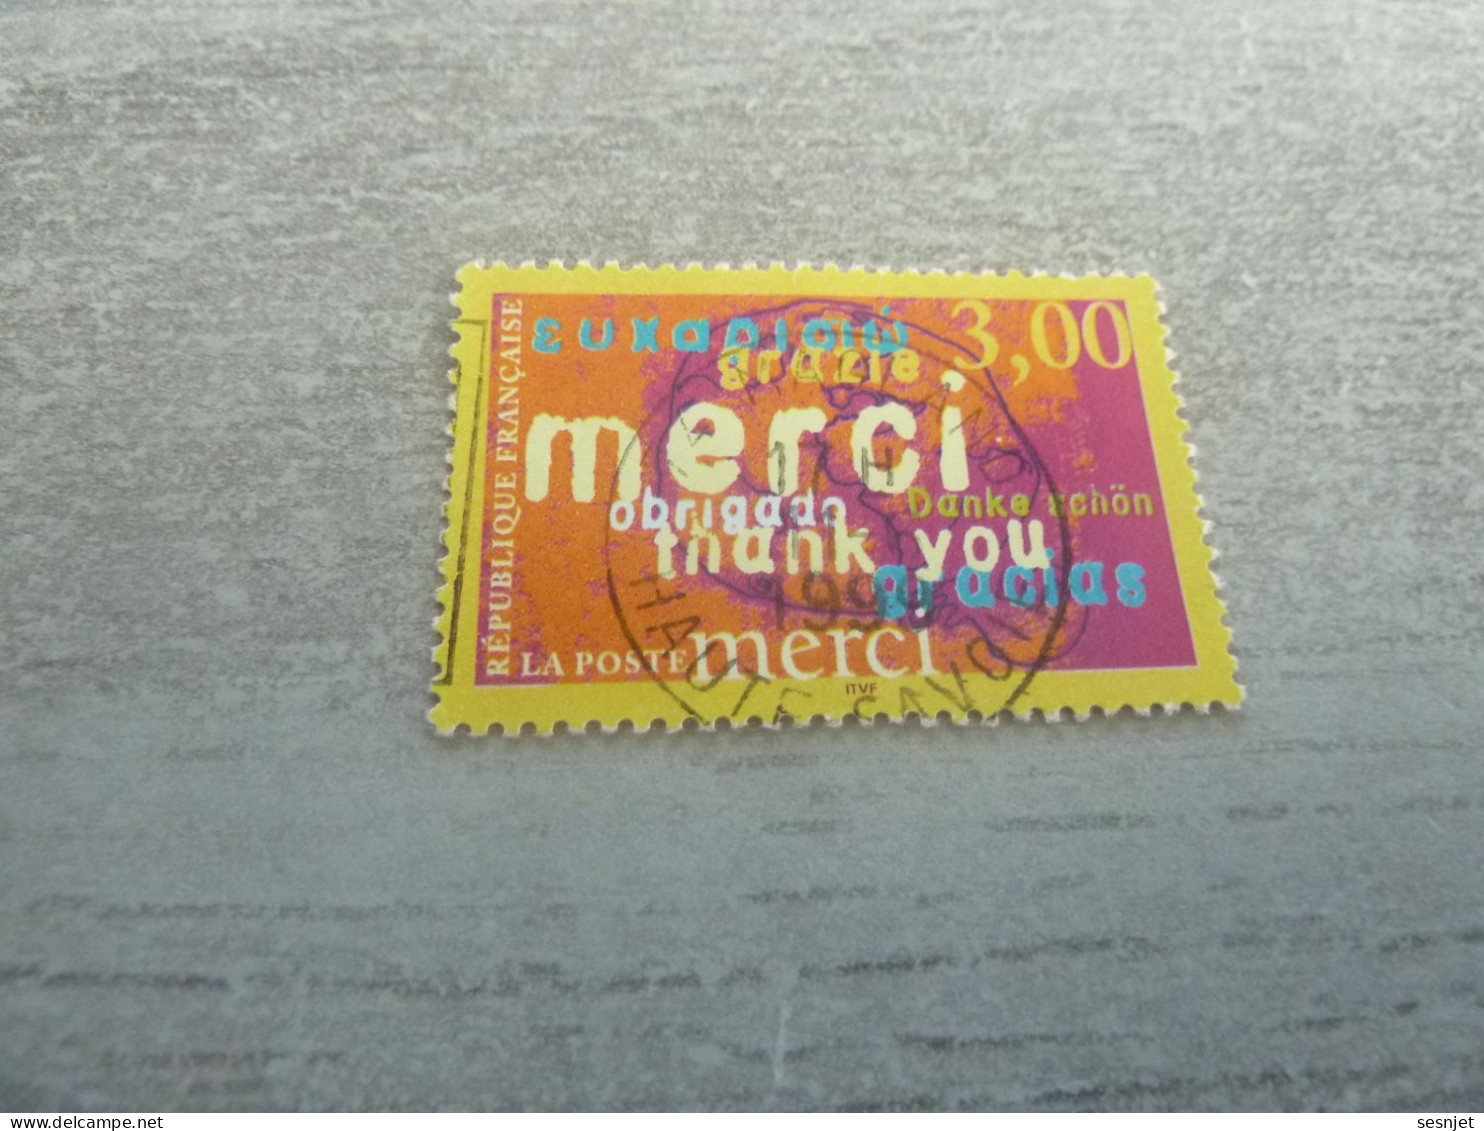 Timbres Pour Remerciements - Merci - 3f. - Yt 3230 - Multicolore - Oblitéré - Année 1999 - - Used Stamps